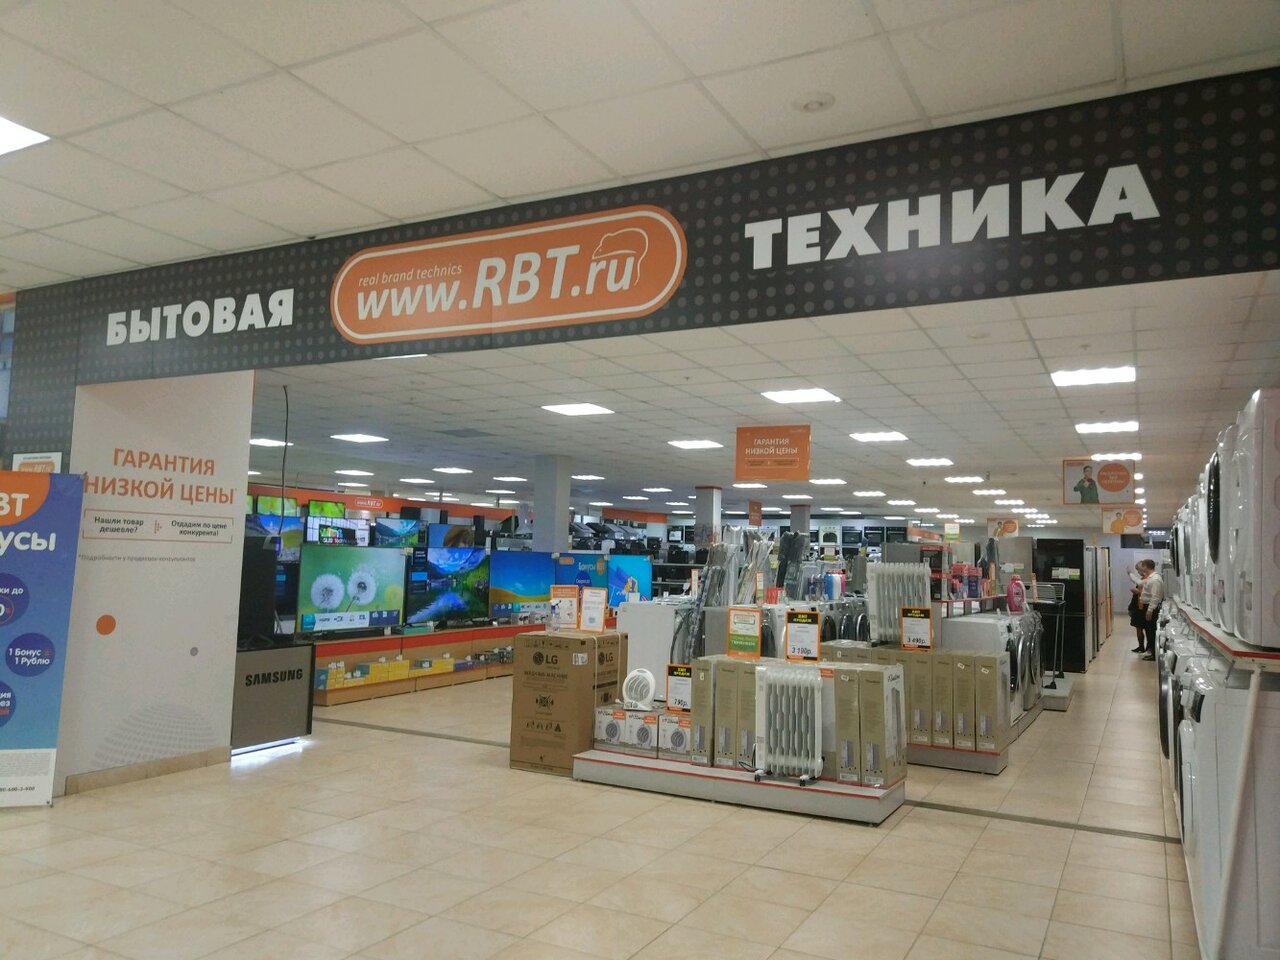 Rbt Ru Пермь Каталог Интернет Магазин